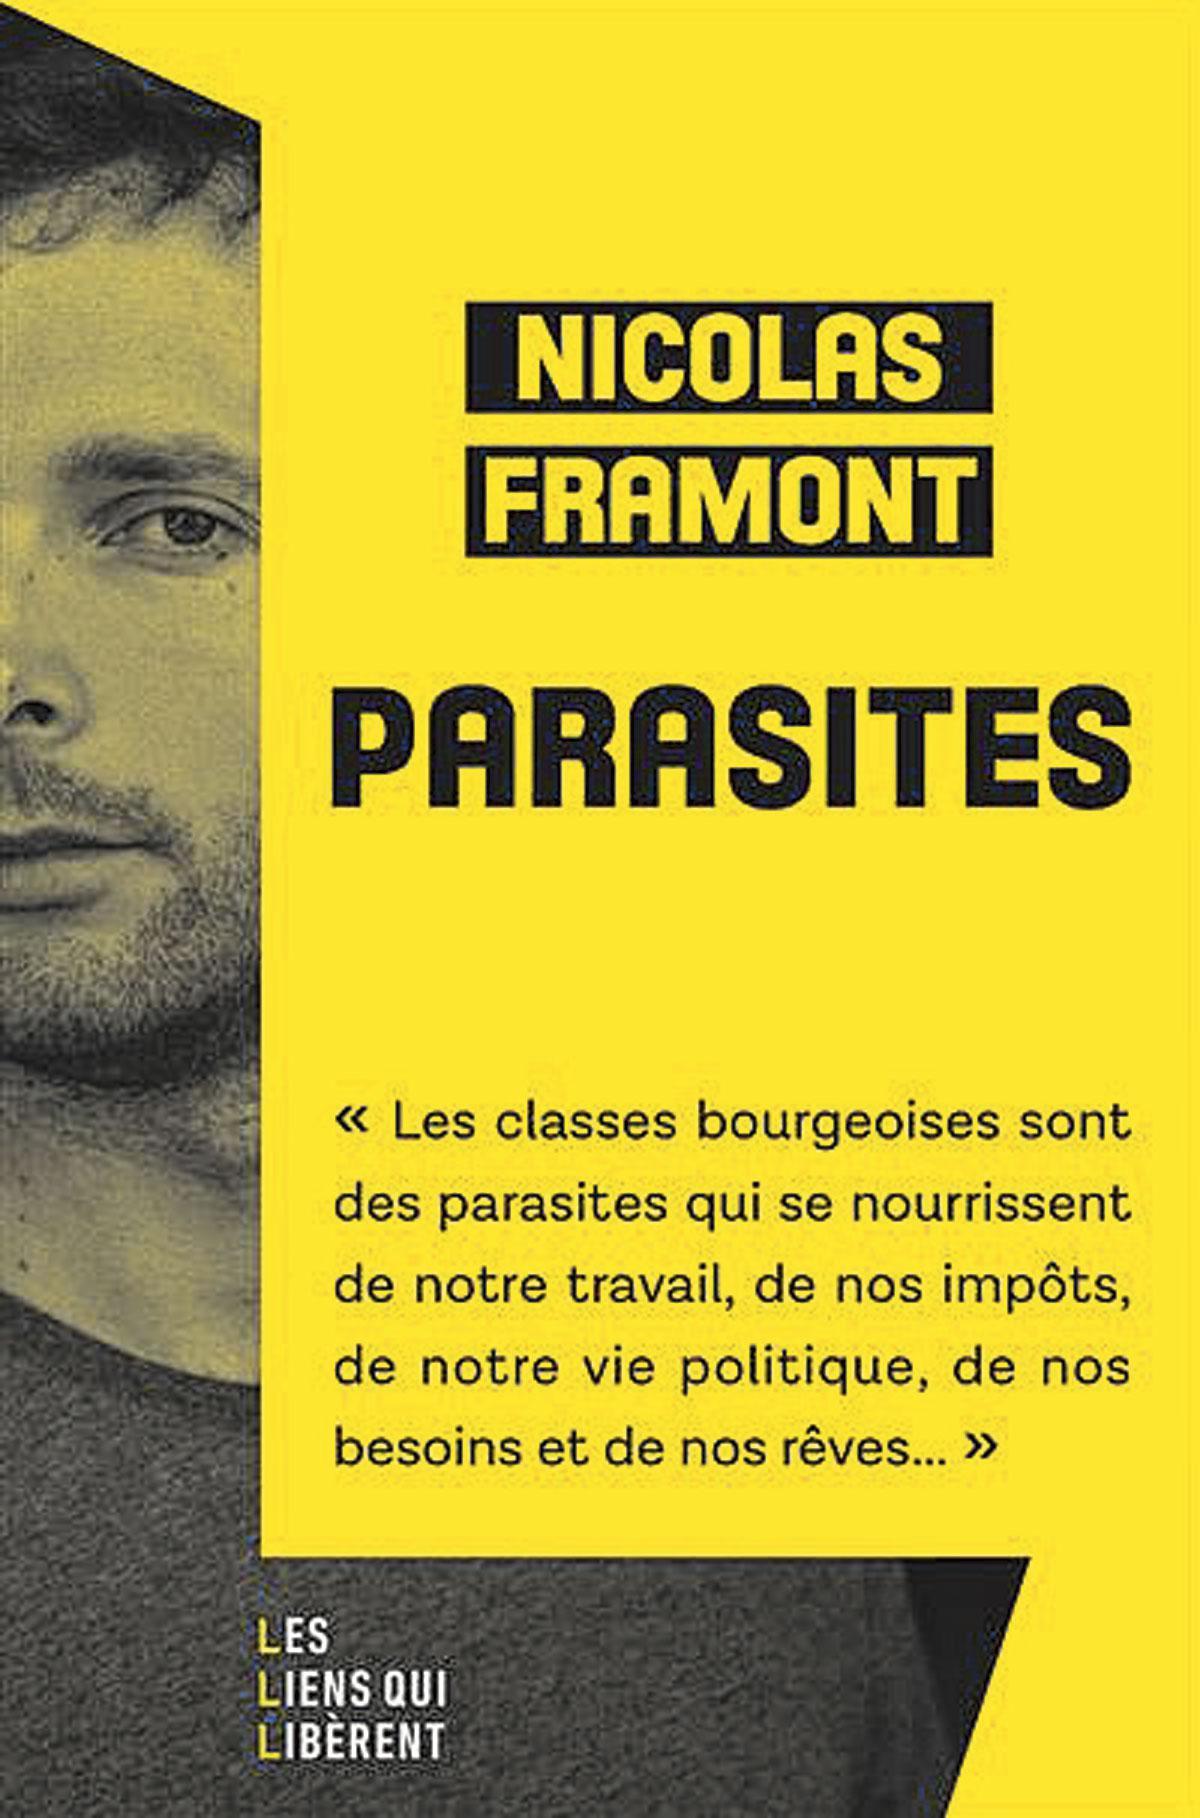 (1) Parasites, par Nicolas Framont, Les Liens qui libèrent, 282 p.